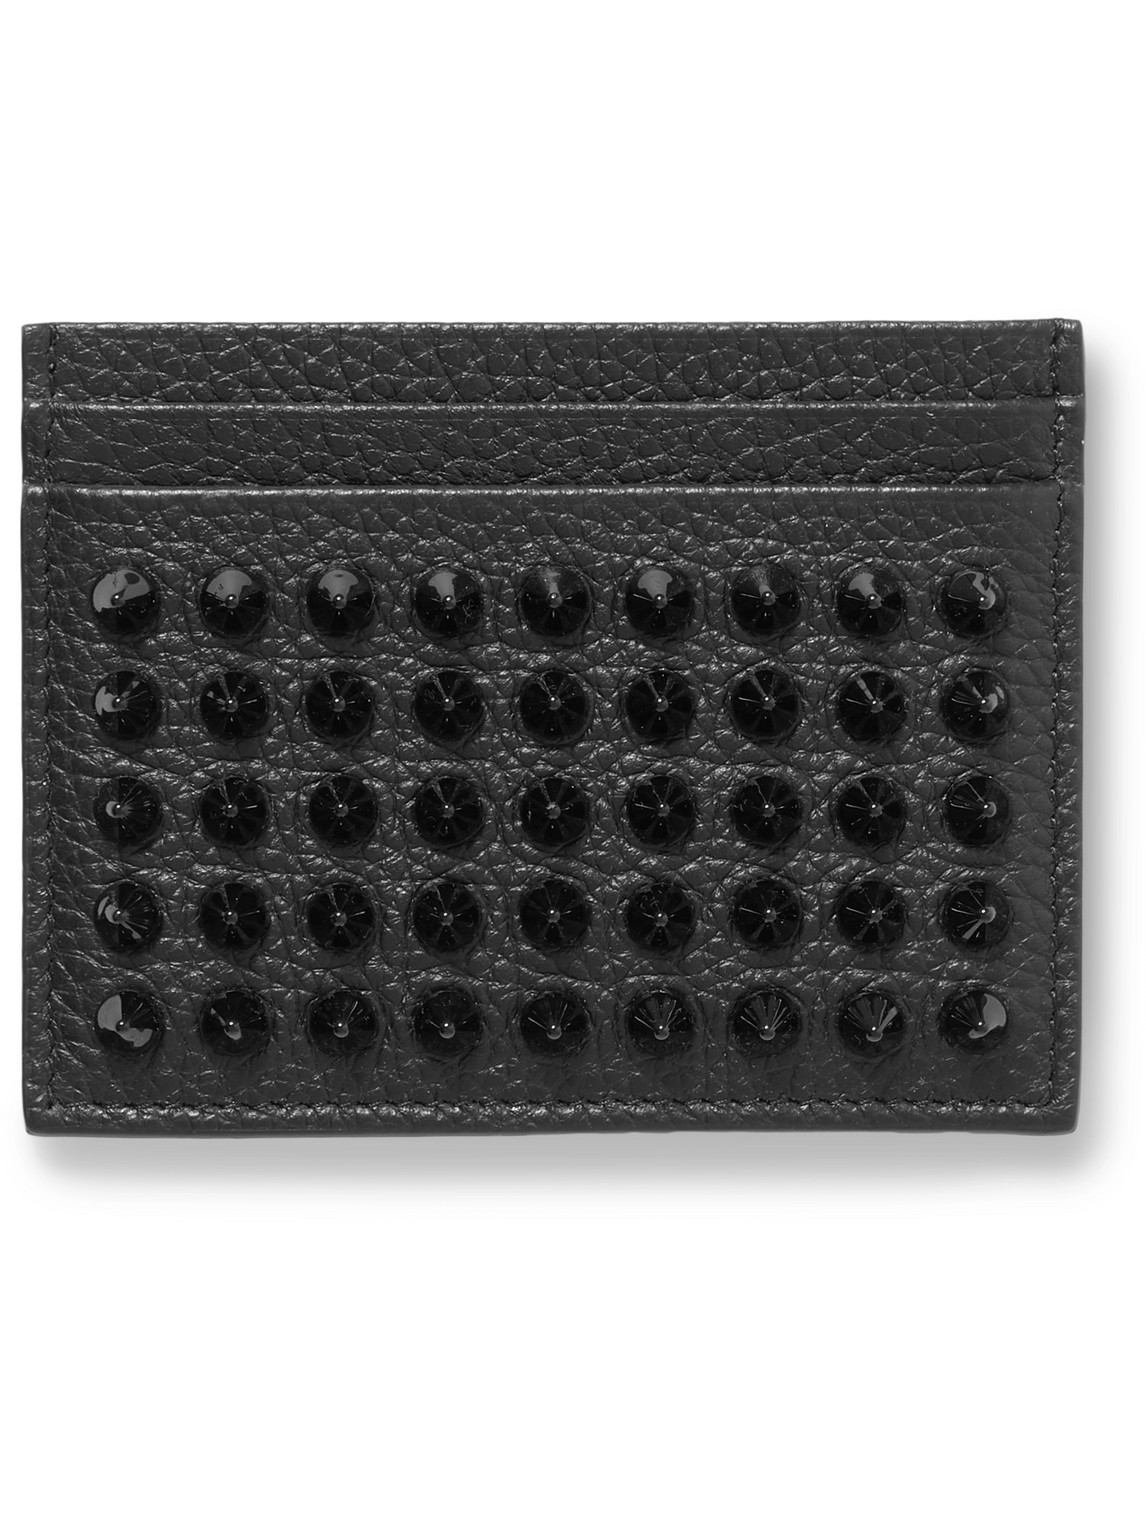 Christian Louboutin Studded Full-grain Leather Cardholder In Black